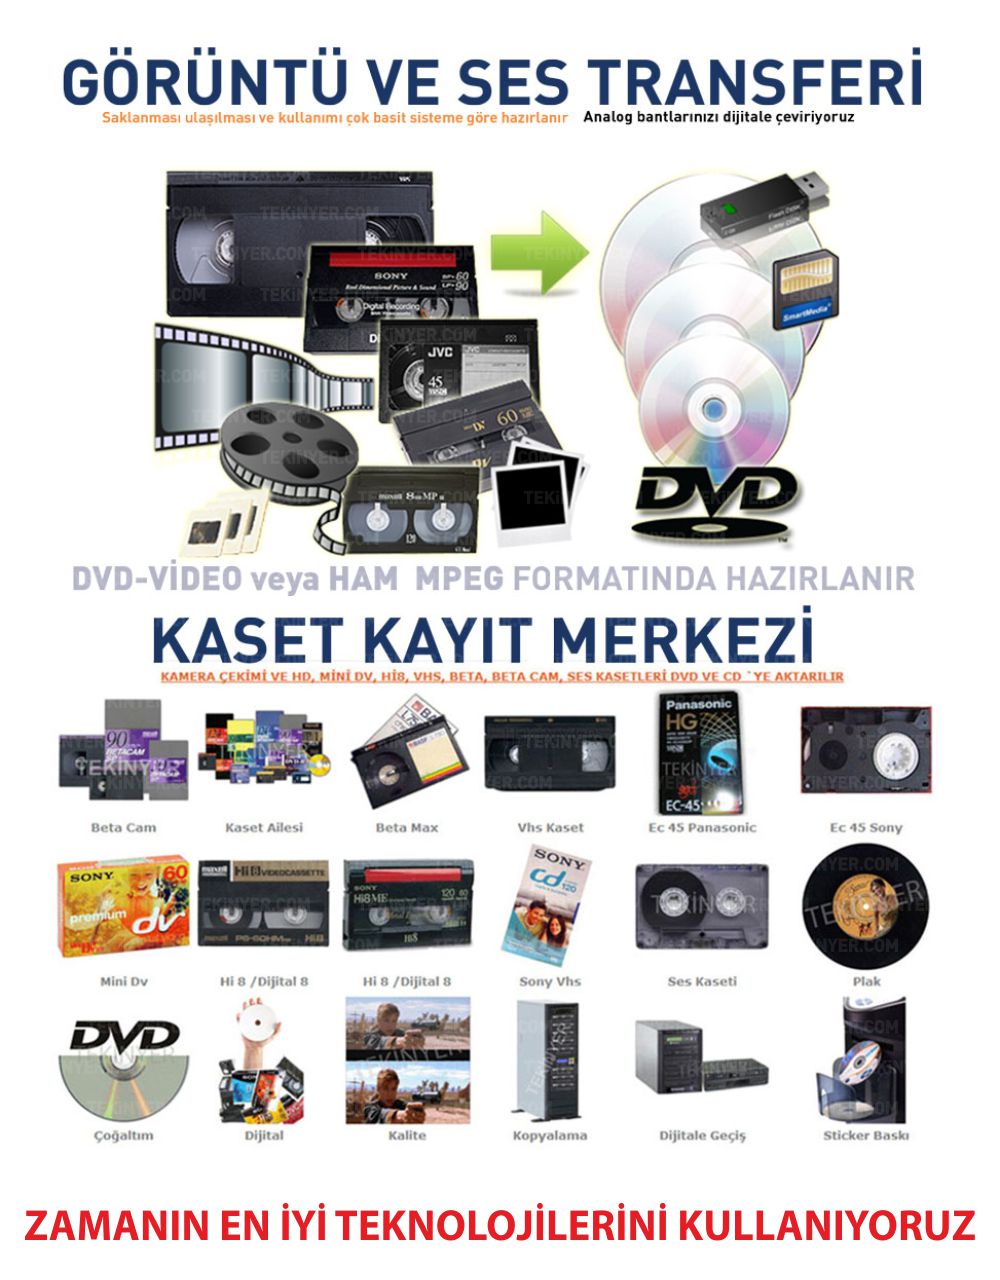 VHS-C ve EC-45 Kasetten Kayıt Aktarım Kasetten Zamanın en iyi teknolijilerini kullanana Aktarım Kayıt Merkezi